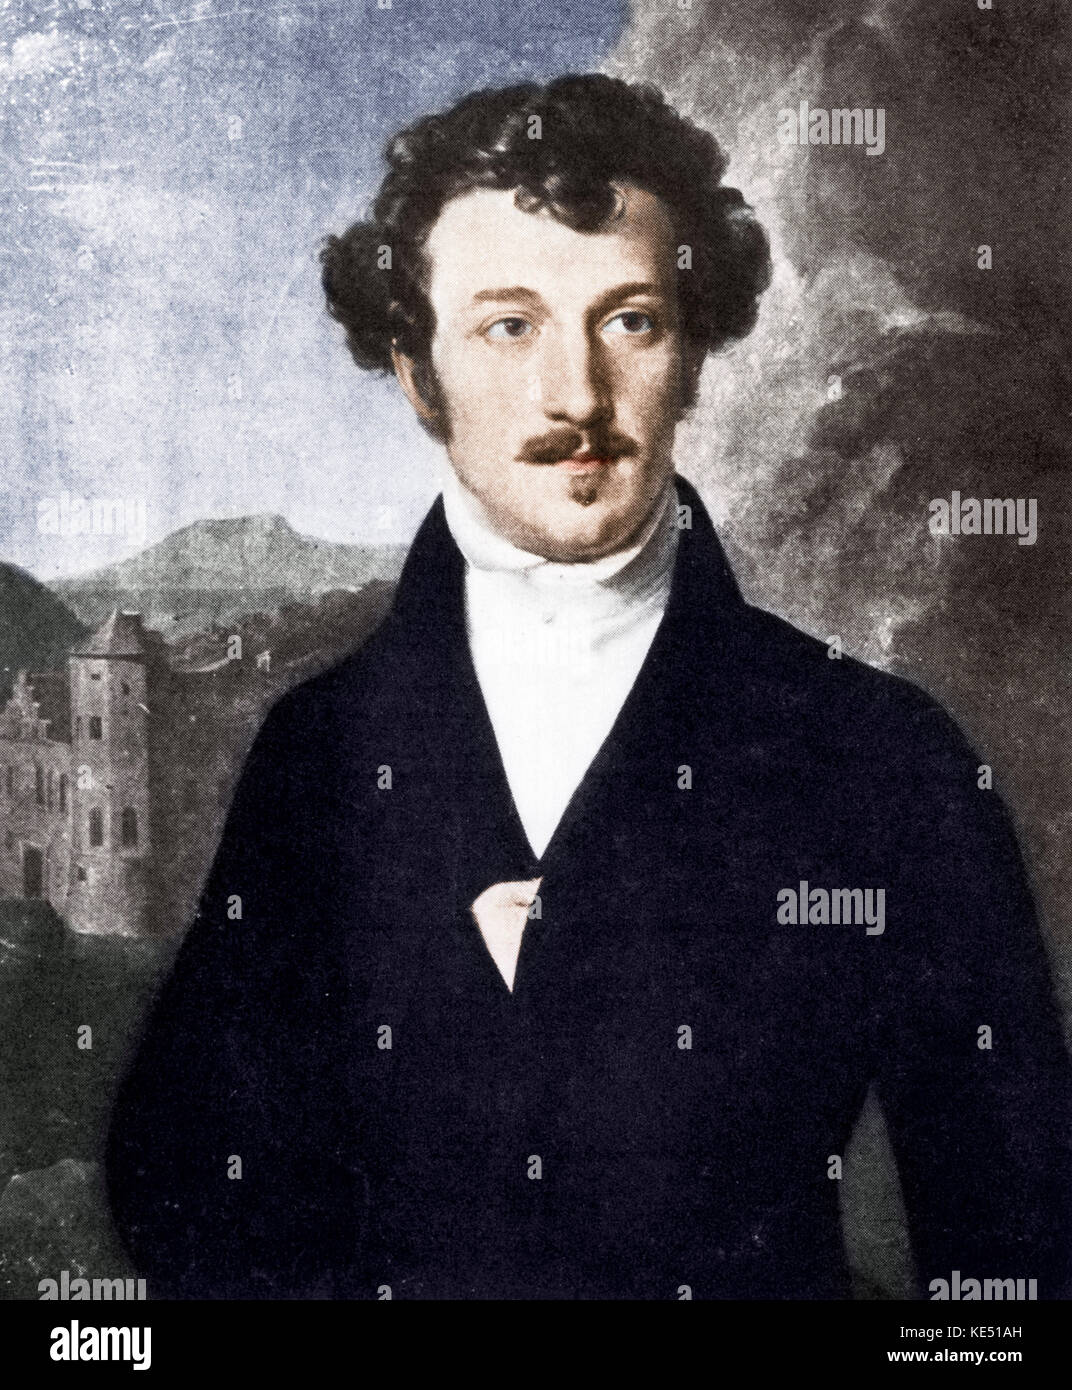 Franz von Schober - Ritratto di tedesco lo scrittore e poeta, 17 maggio 1798 - 13 settembre 1882 - il più vicino di tutti Schubert amici Foto Stock